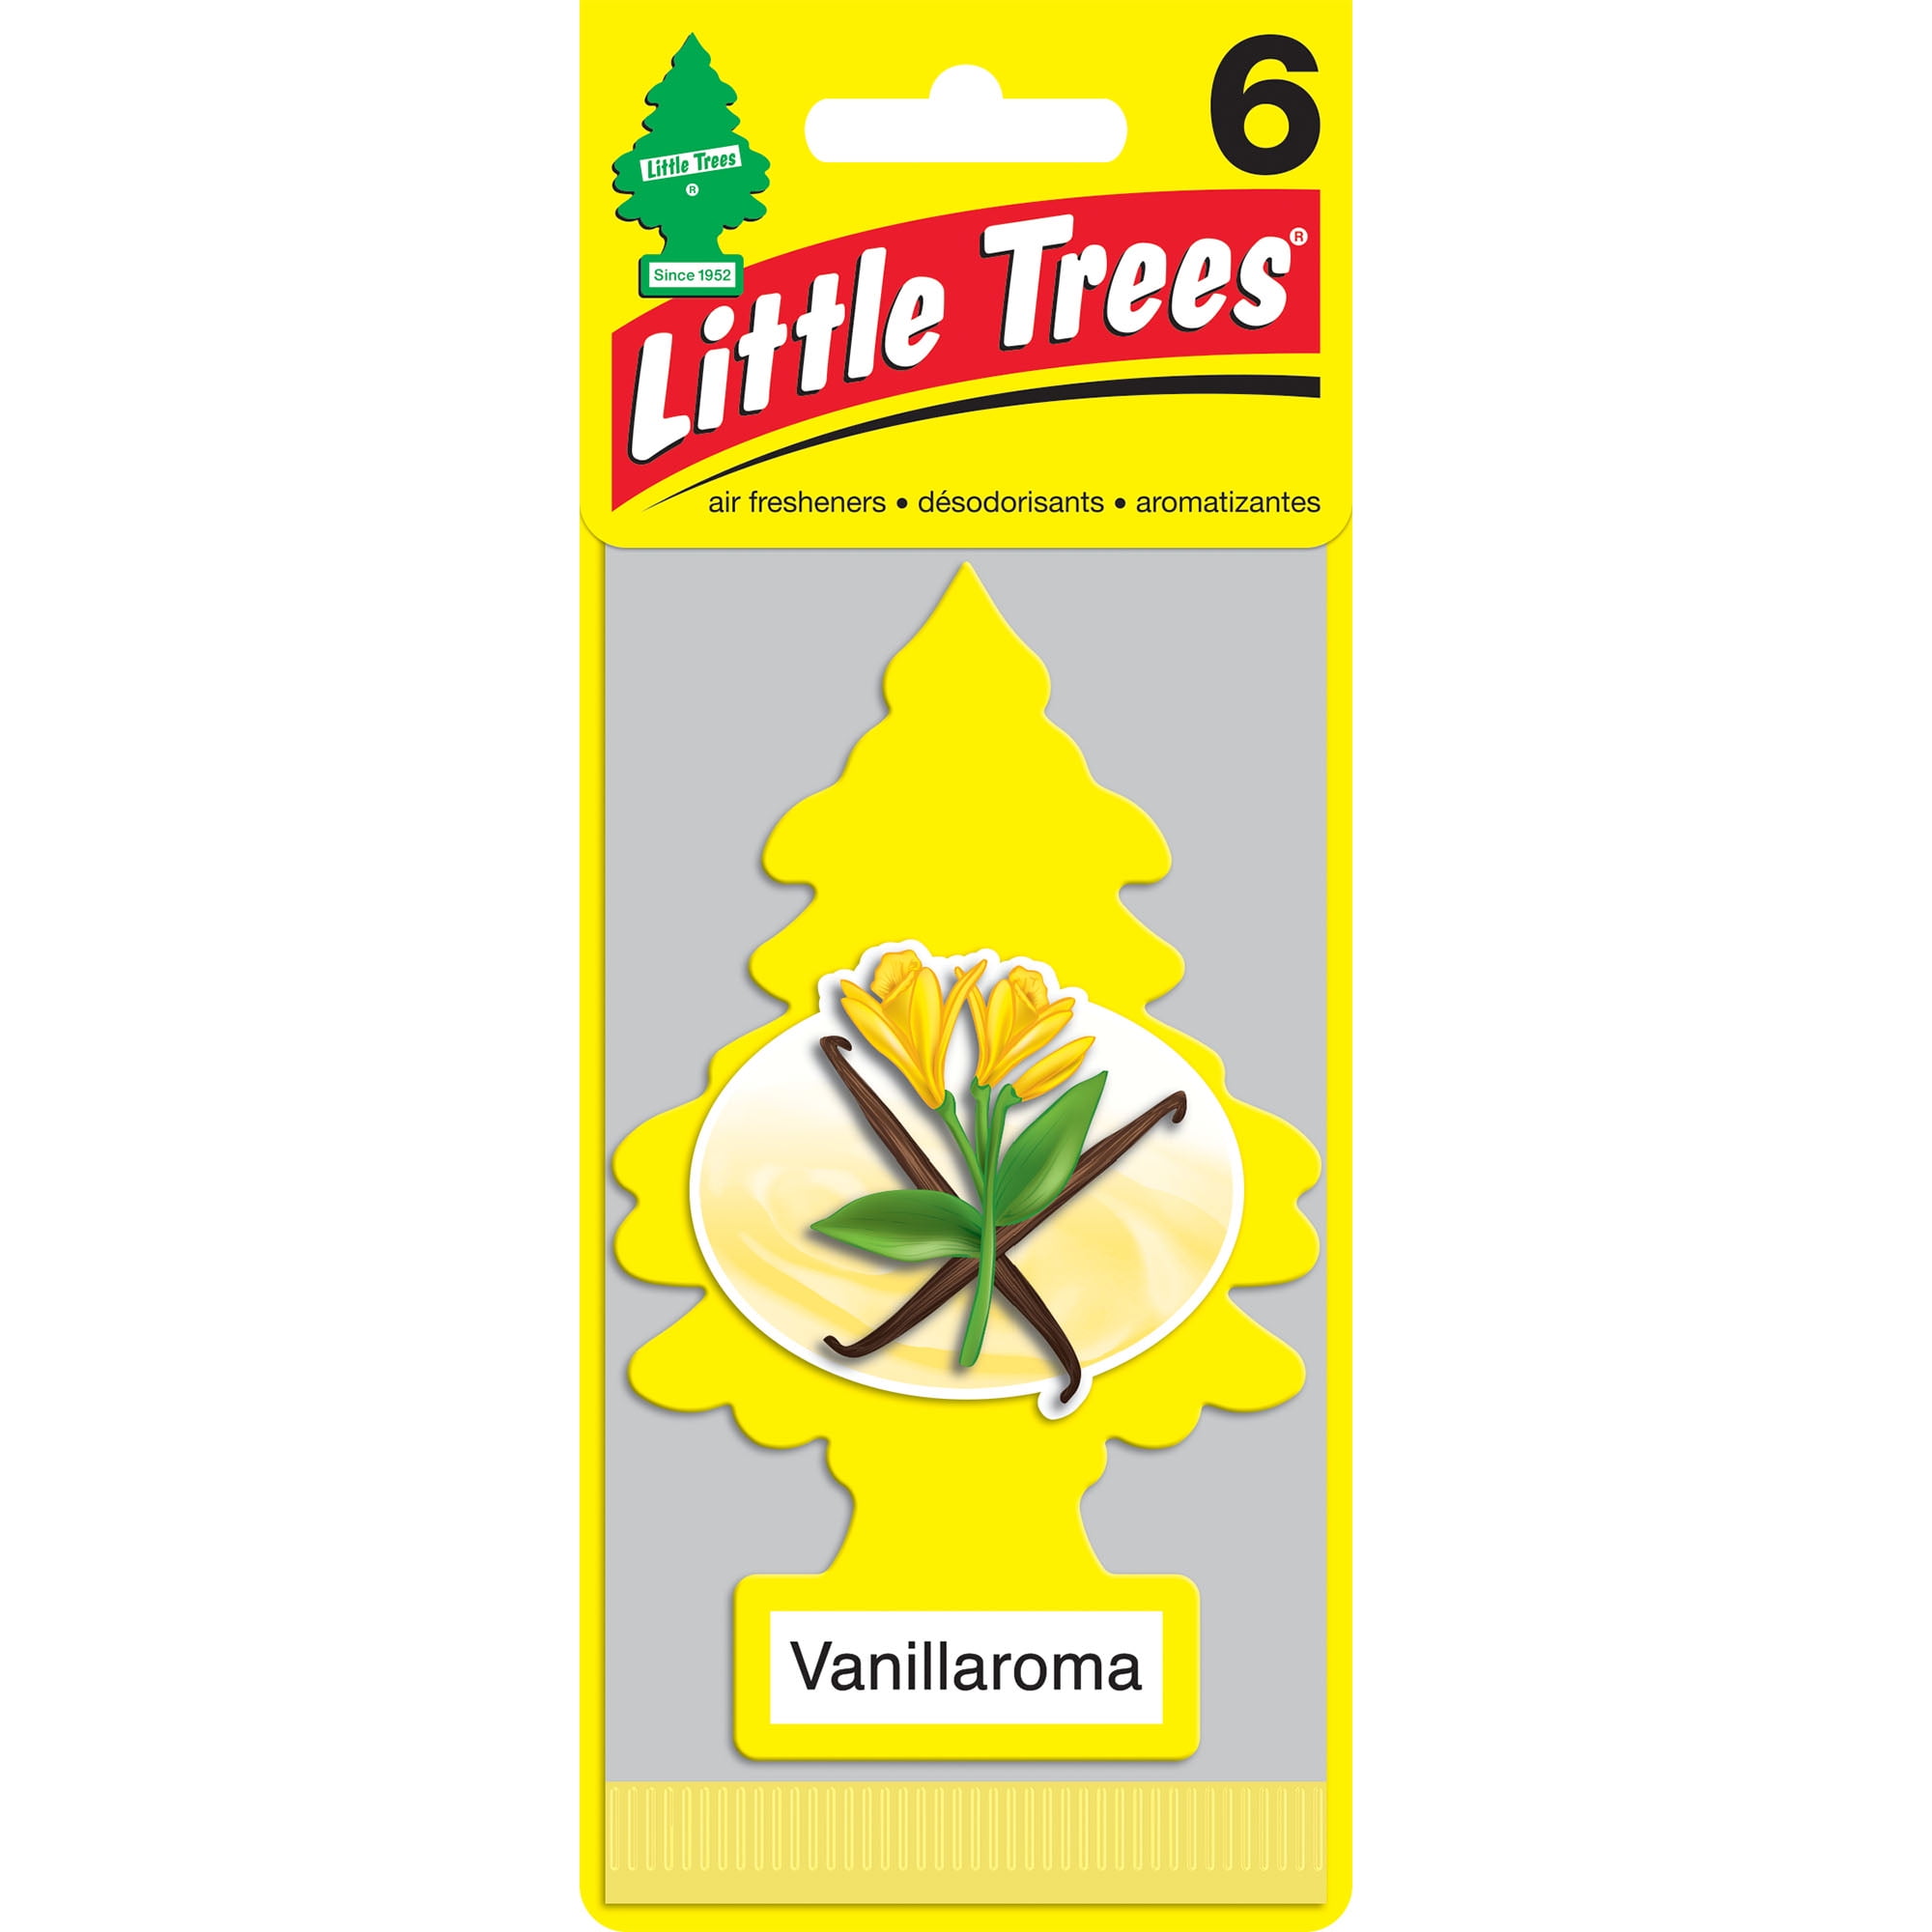 Little Trees Air Freshener Vanillaroma Scent Fragrance, 6 Pack